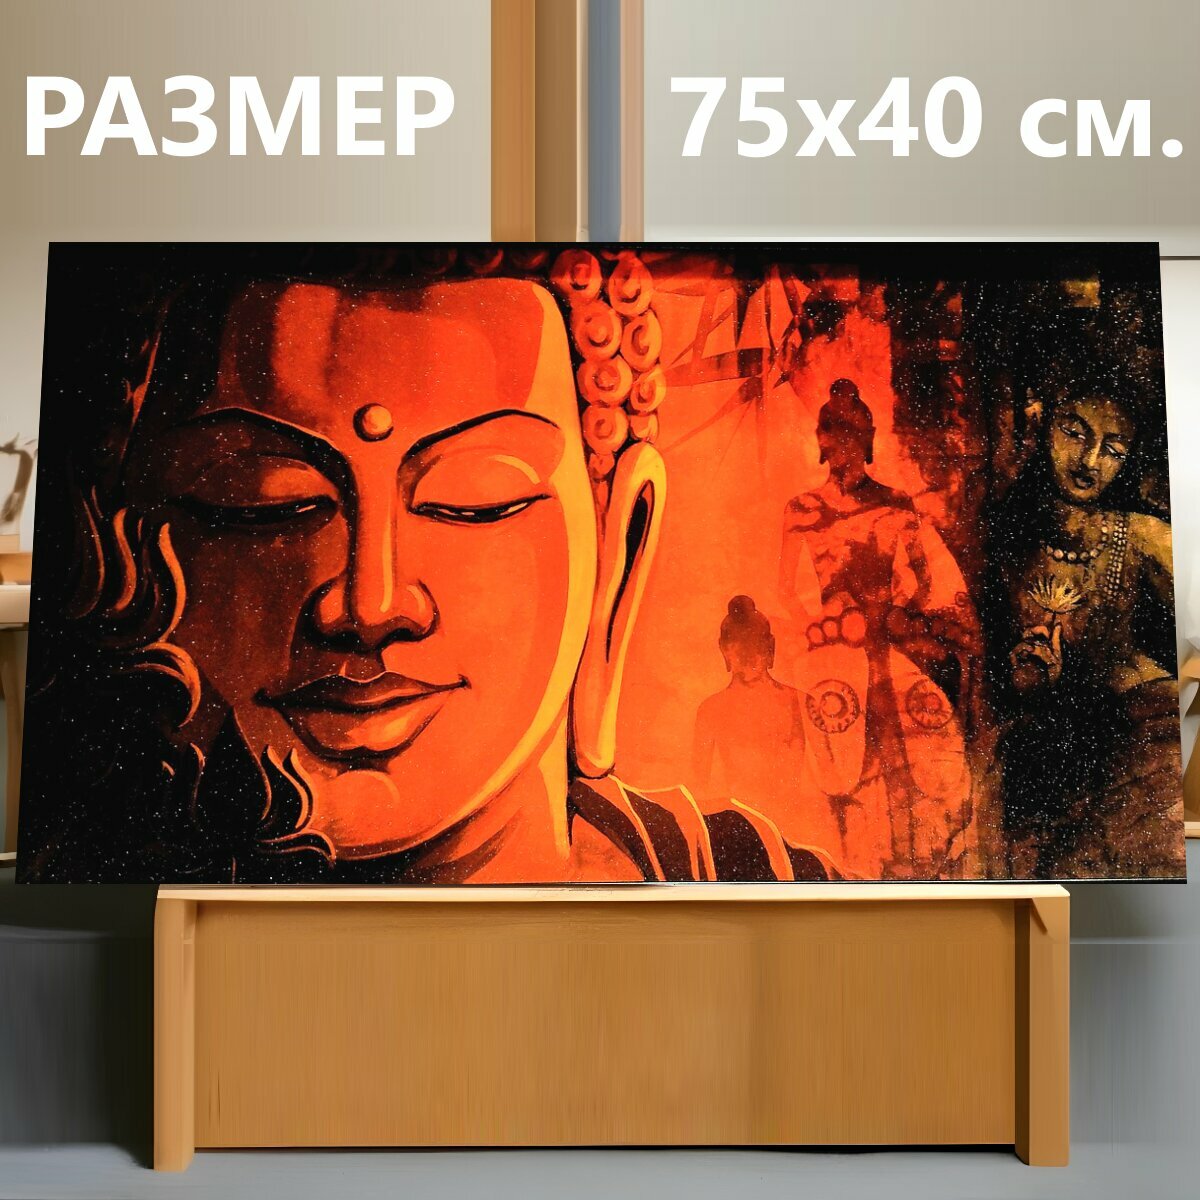 Картина на холсте "Будда, медитация, спокойствие" на подрамнике 75х40 см. для интерьера